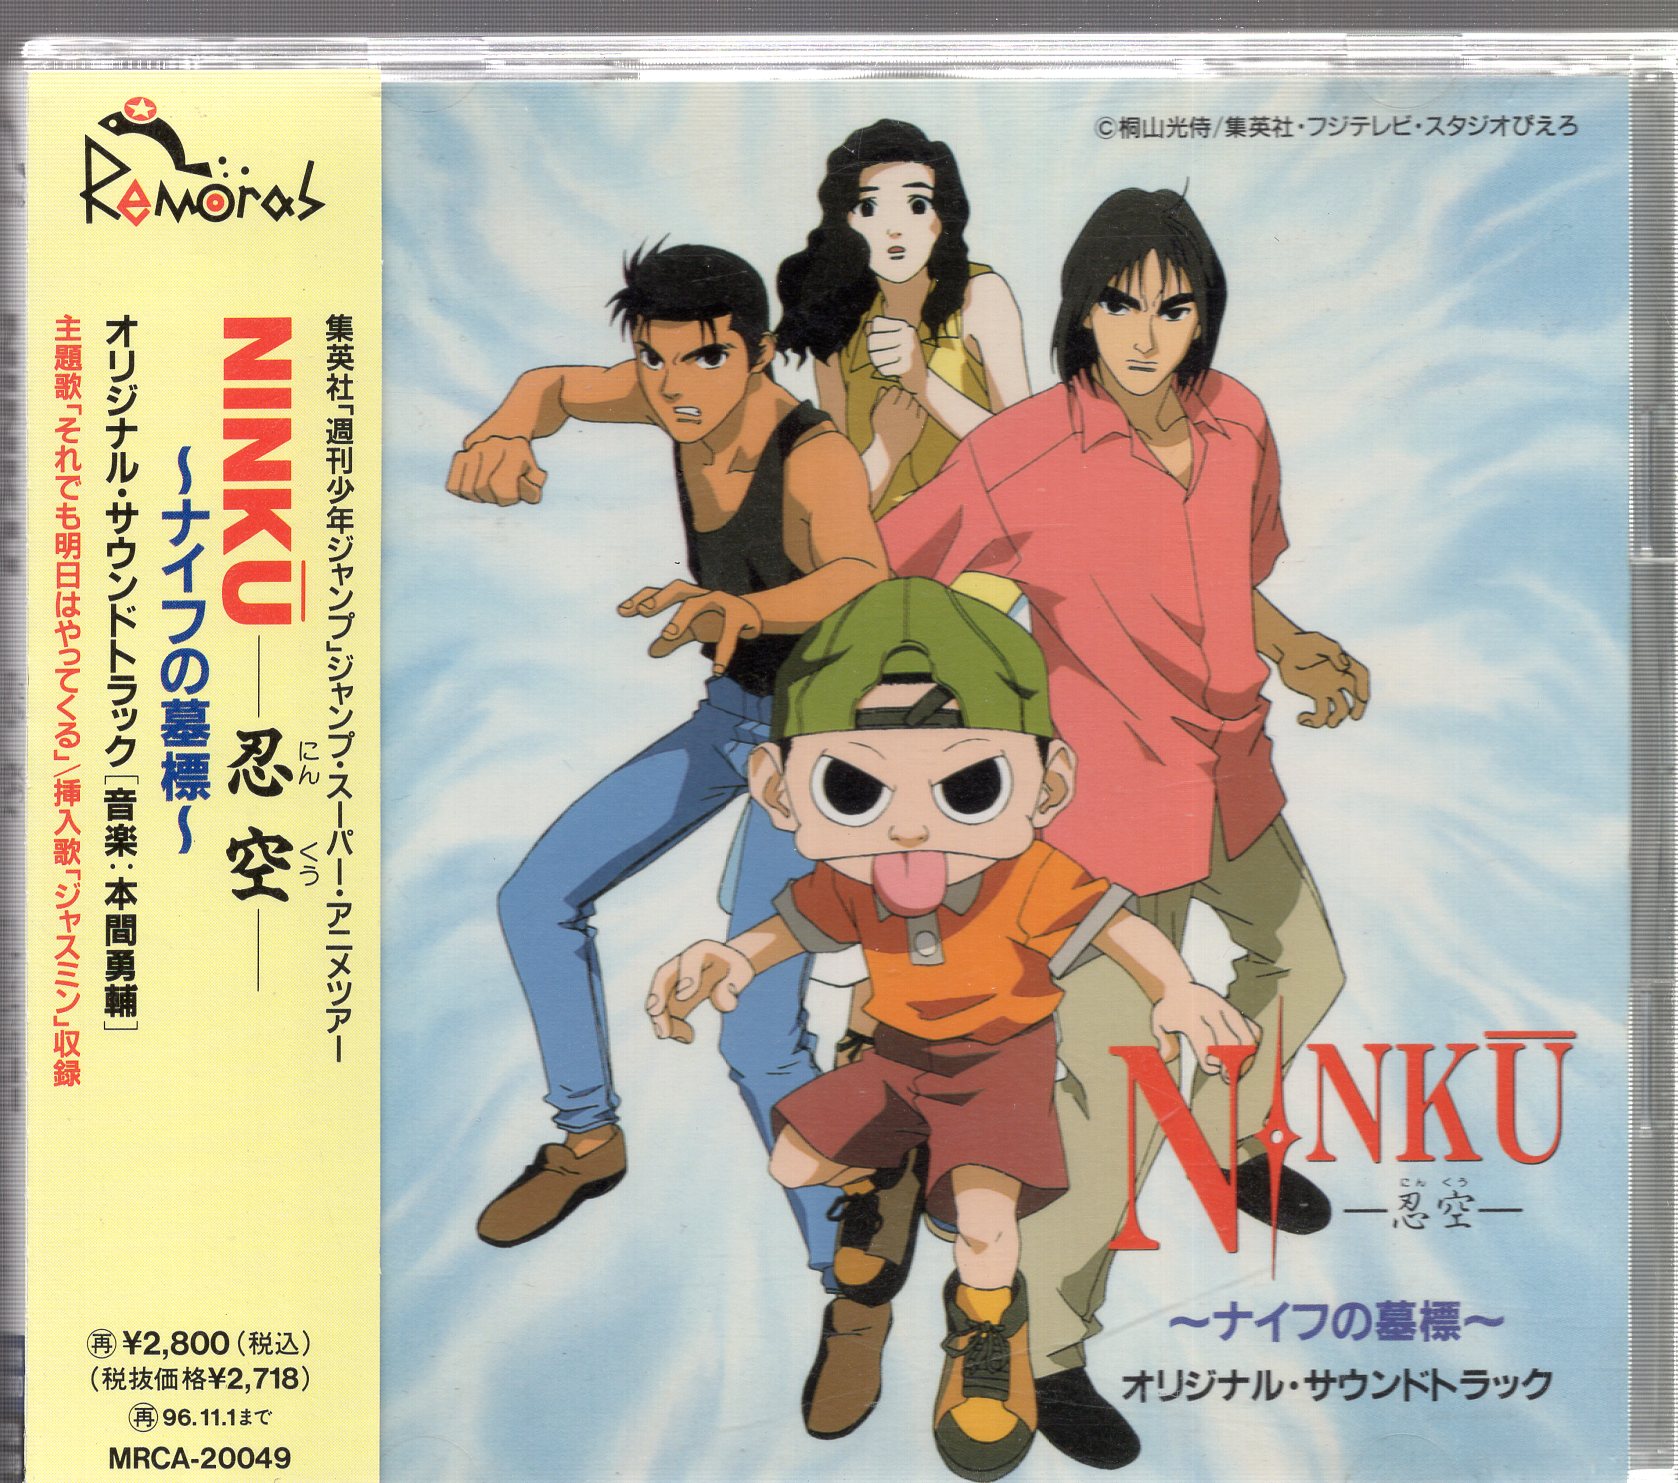 Grave Markers Original Soundtrack Of Anime Cd Ninku Knife Mandarake Online Shop